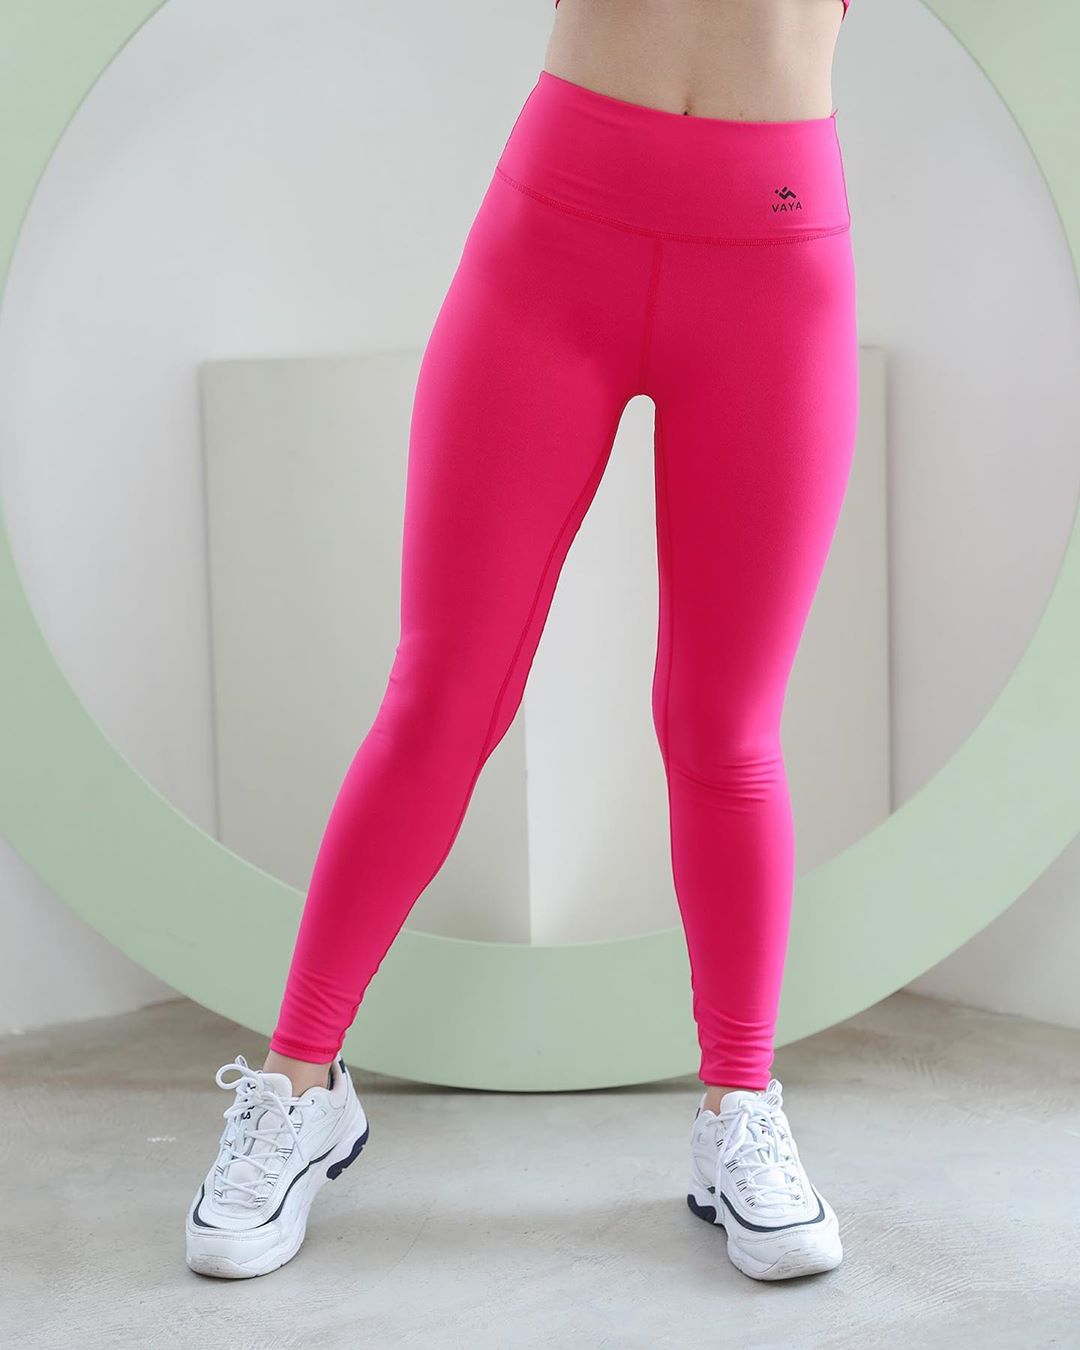  Hot Pink Sport Leggings